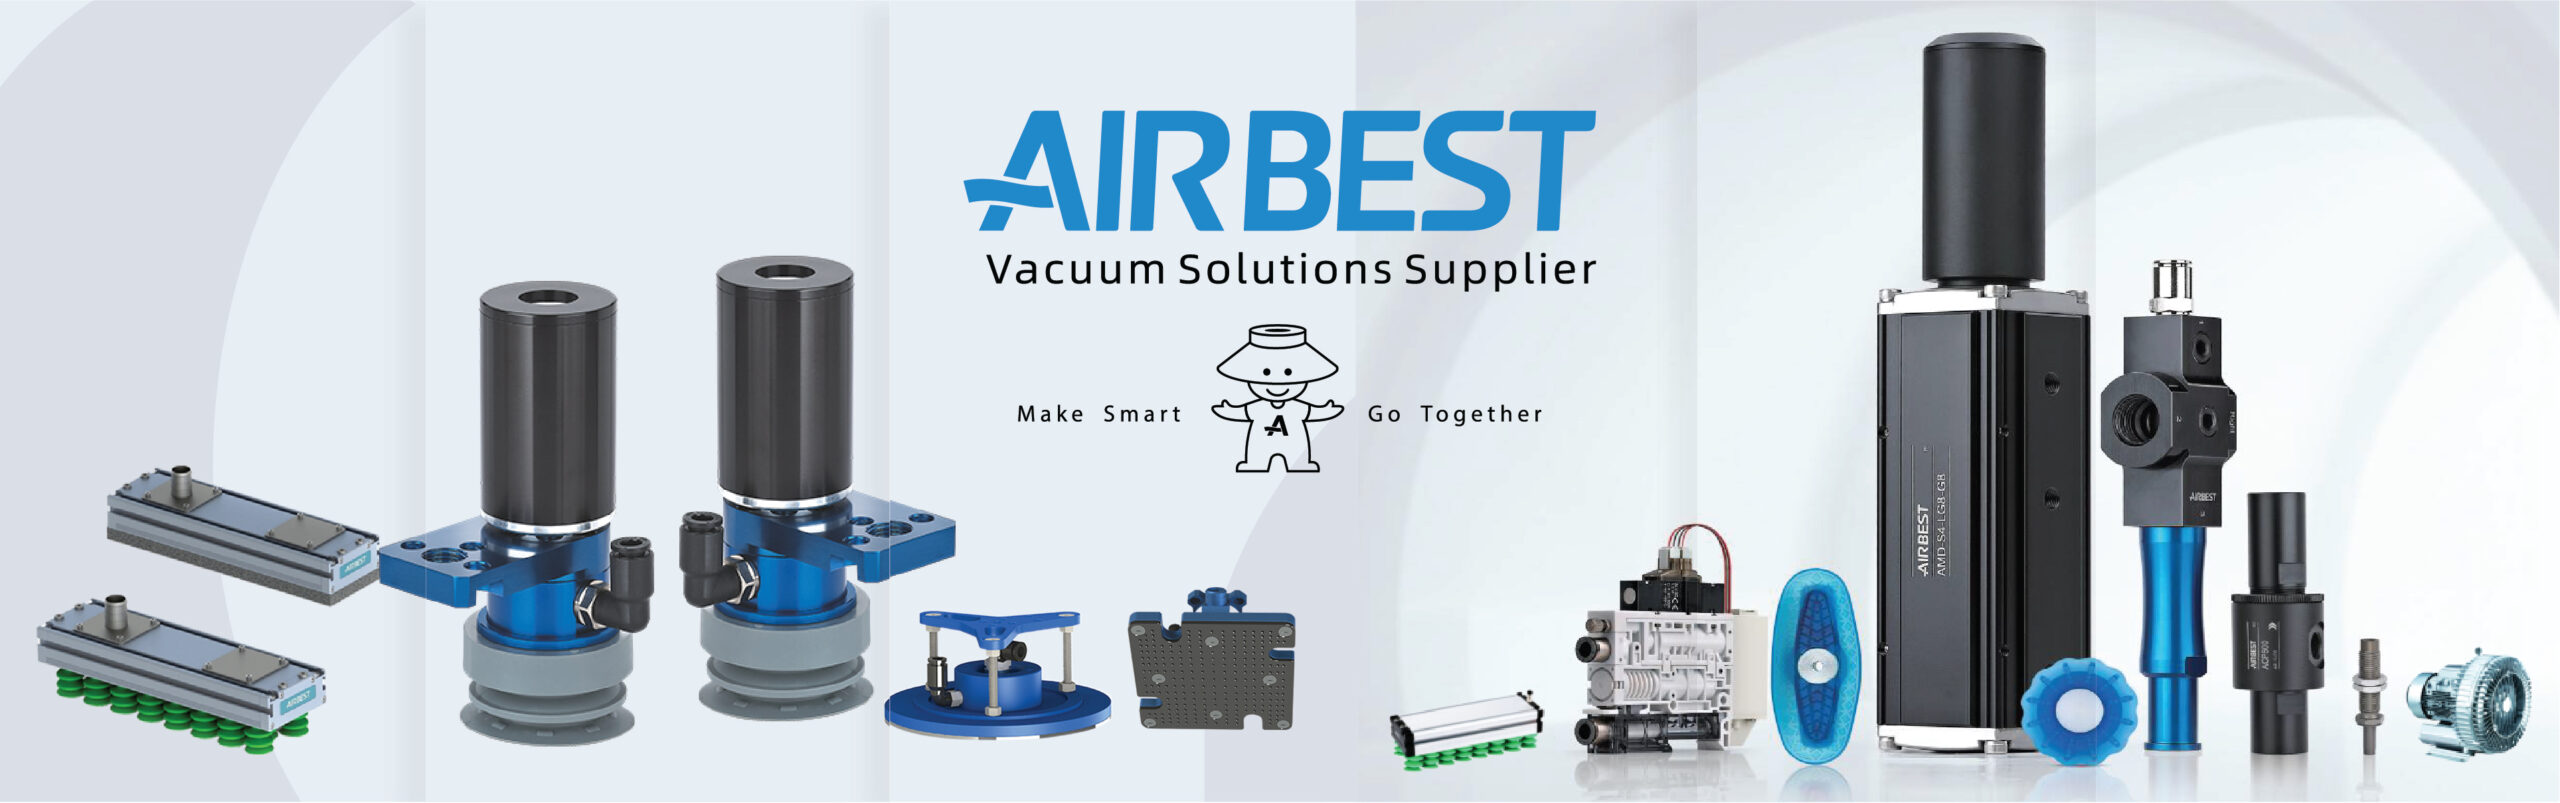 Airbest vaccum solutions supplier